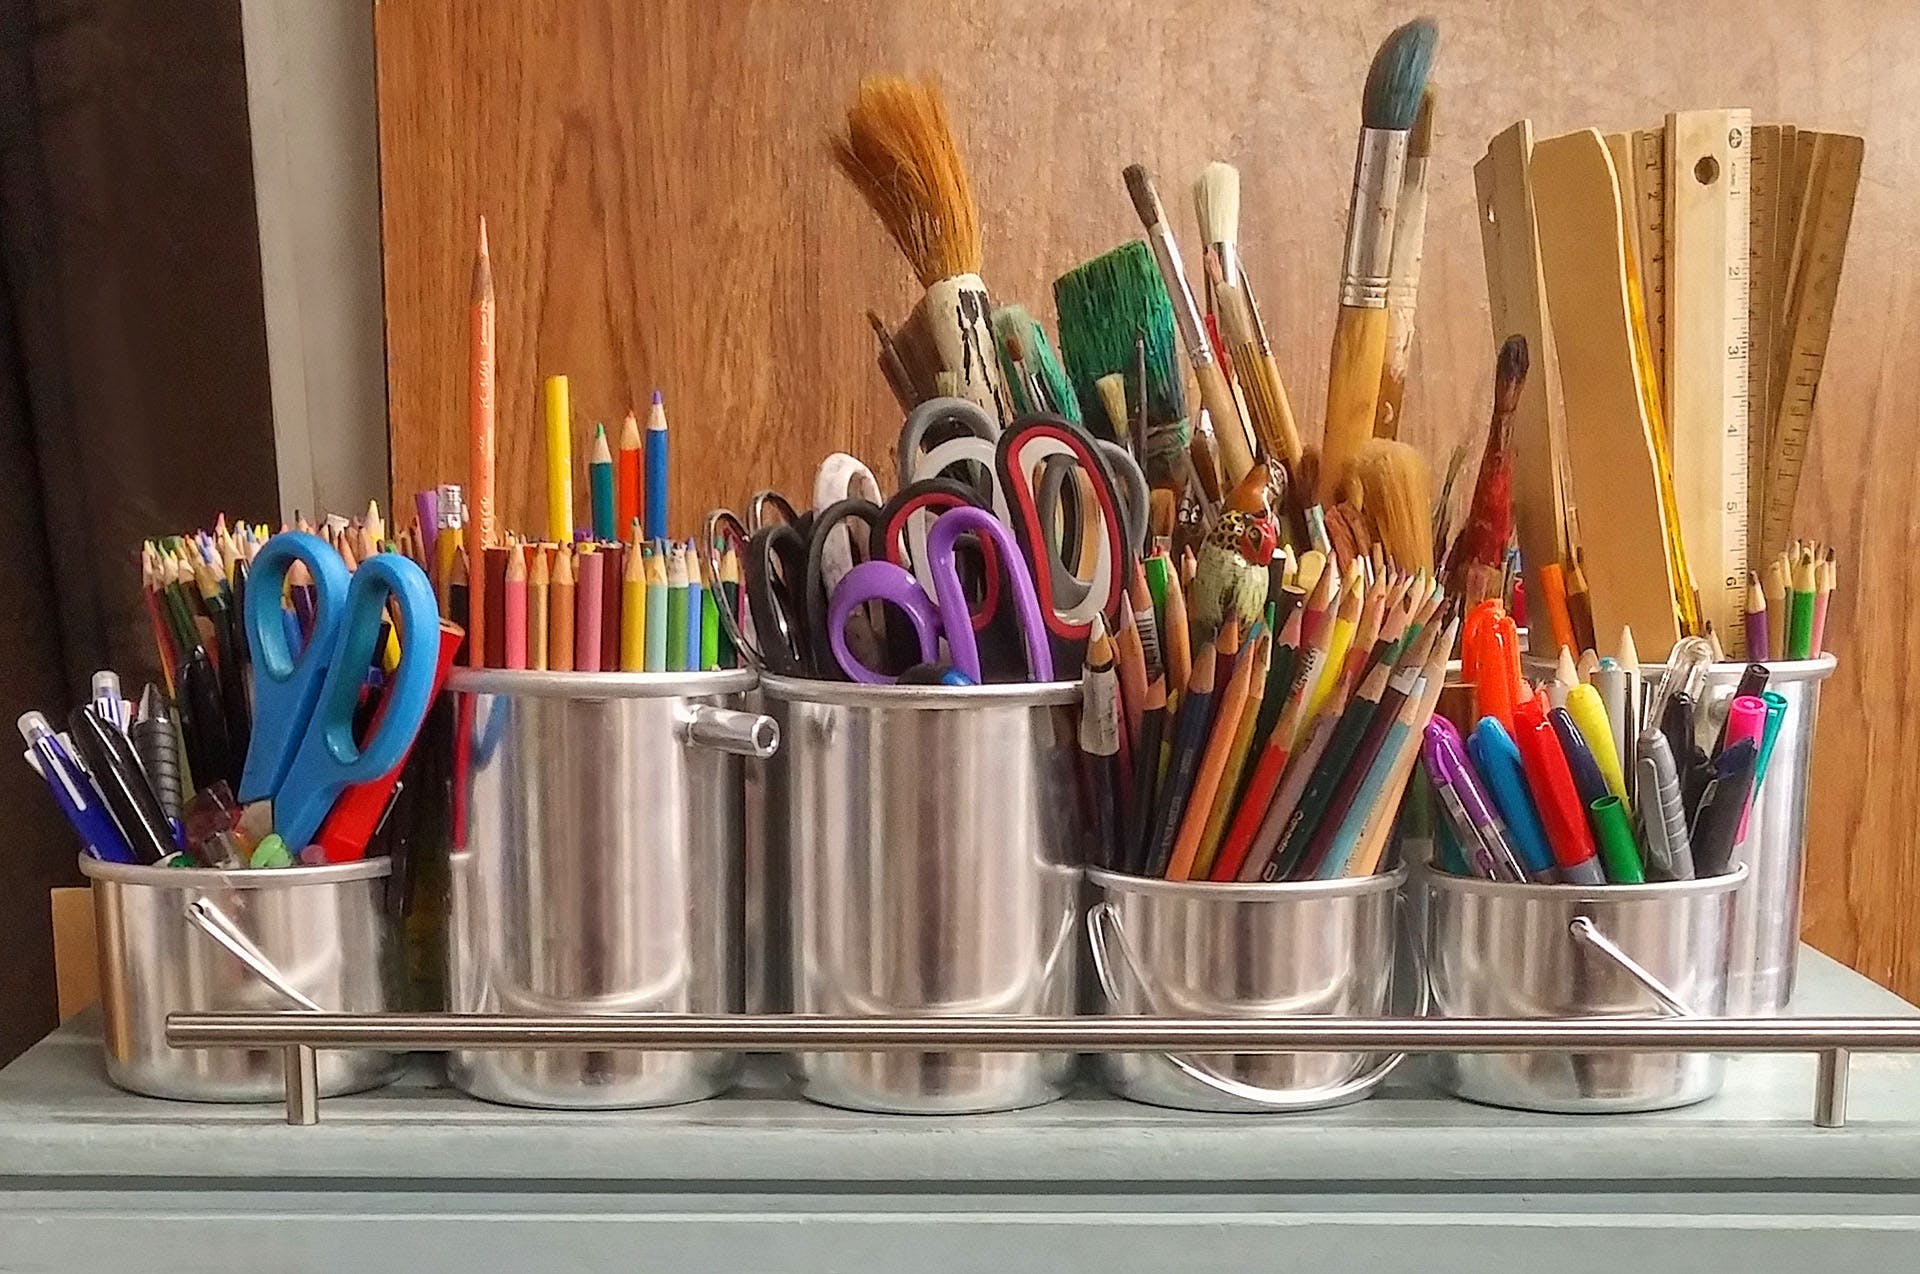 Art supplies in steel buckets | Source: Pexels